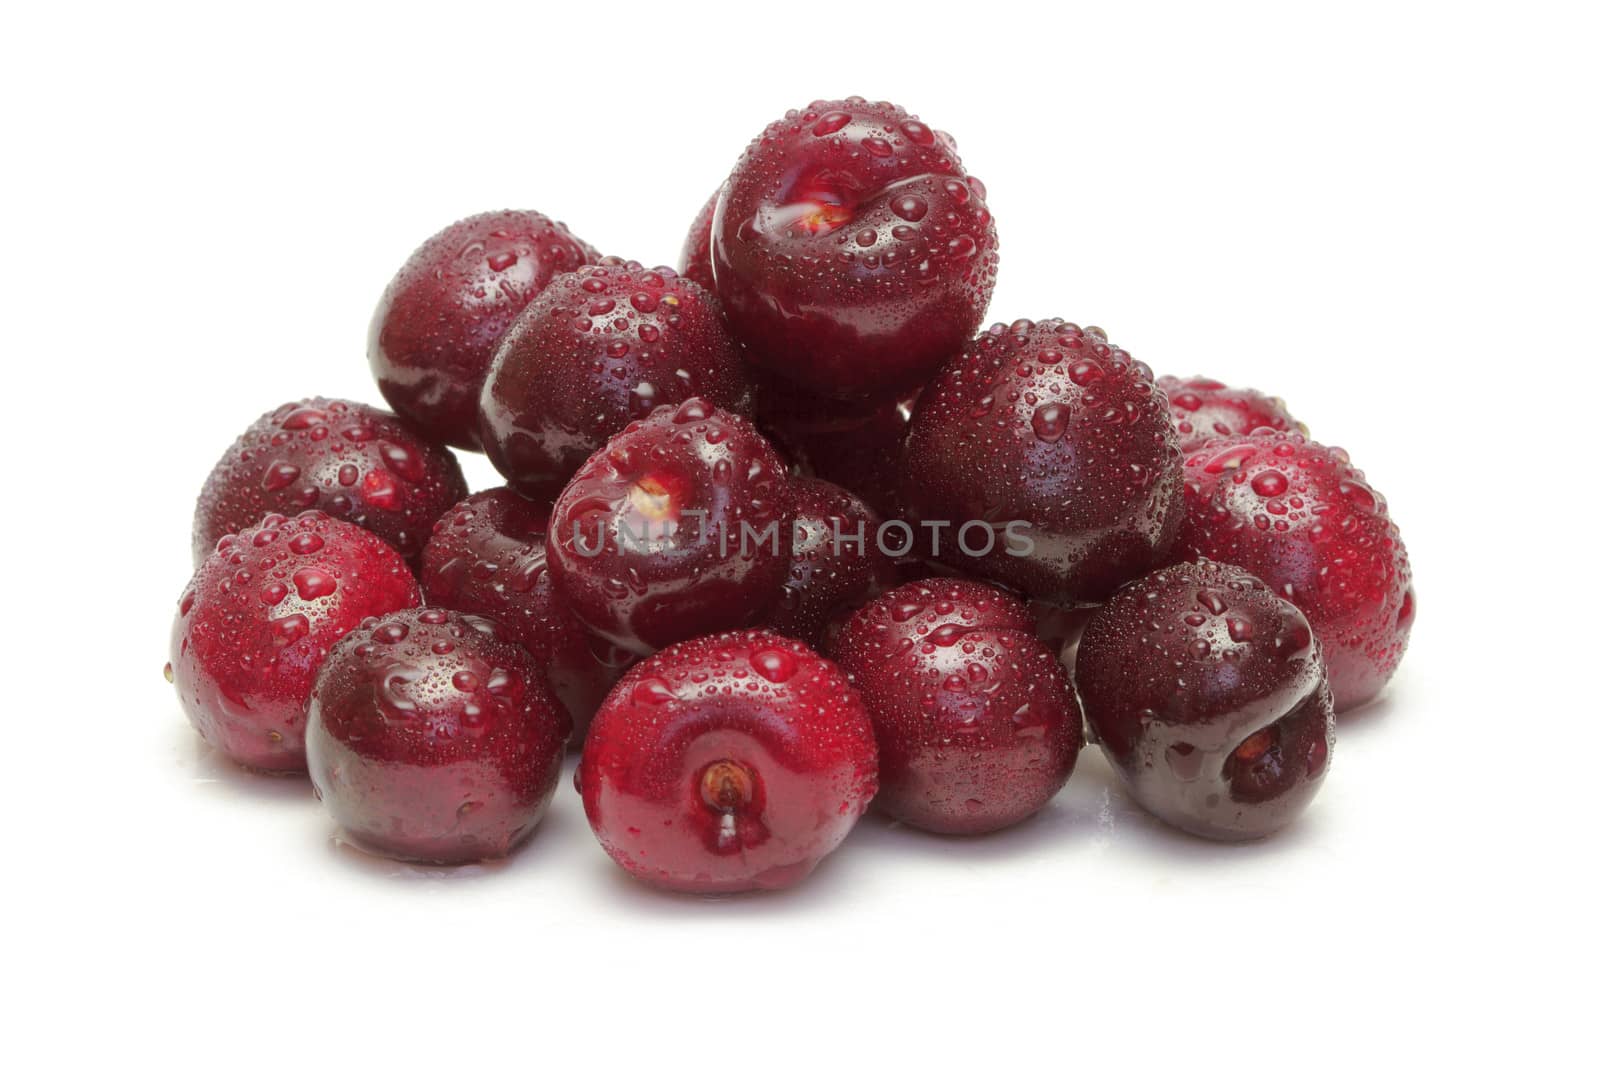 Ripe cherries  by marslander